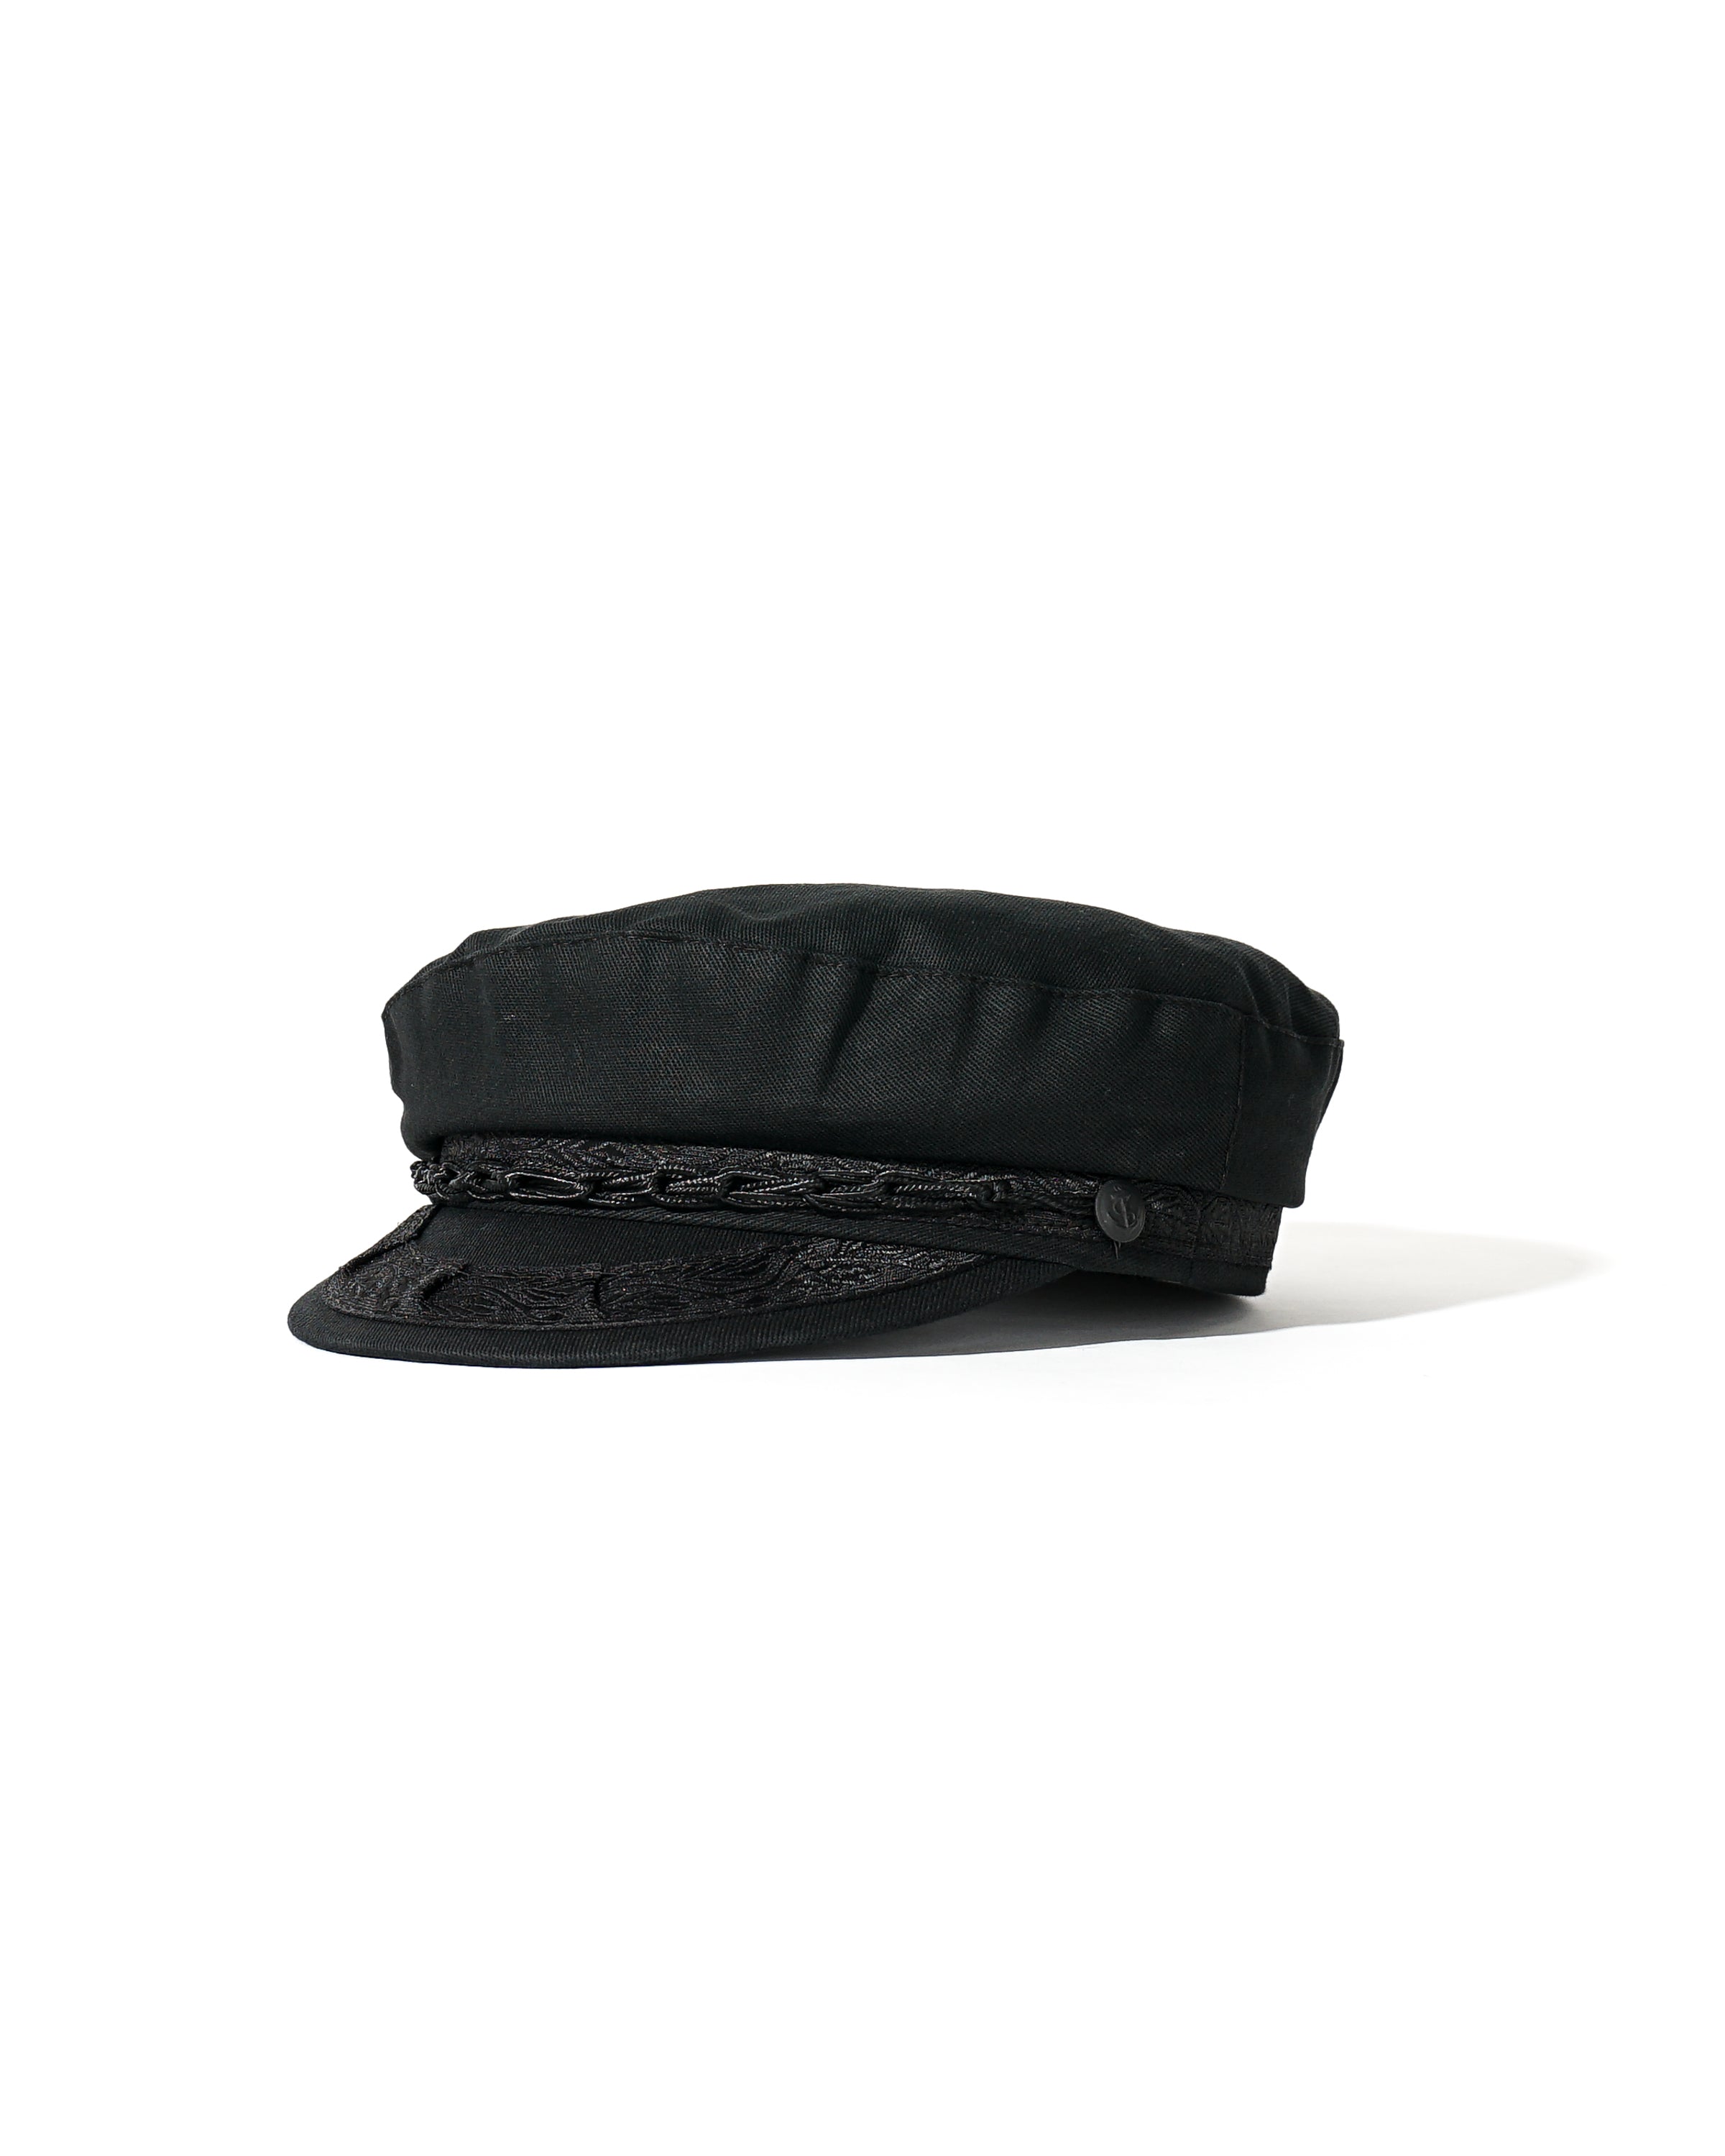 Fisherman Hat - Black - Greek Cotton